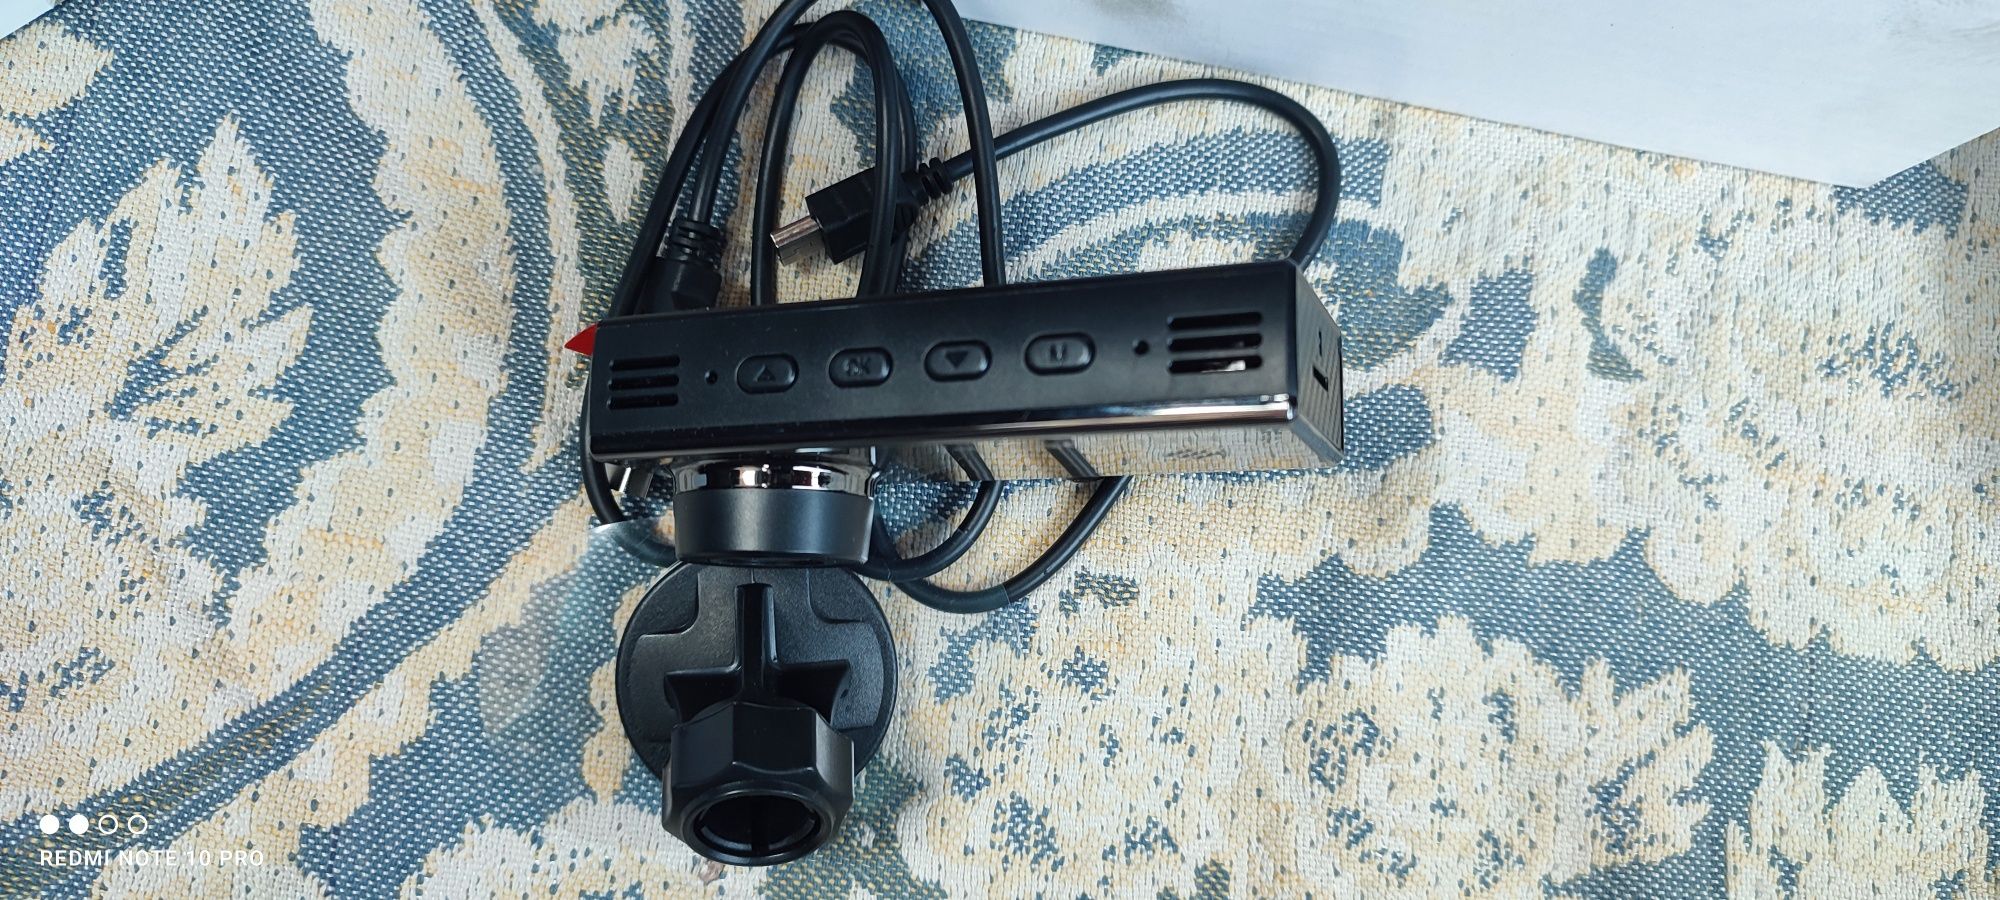 Продам Видеорегистратор может записывать две камеры например заднюю